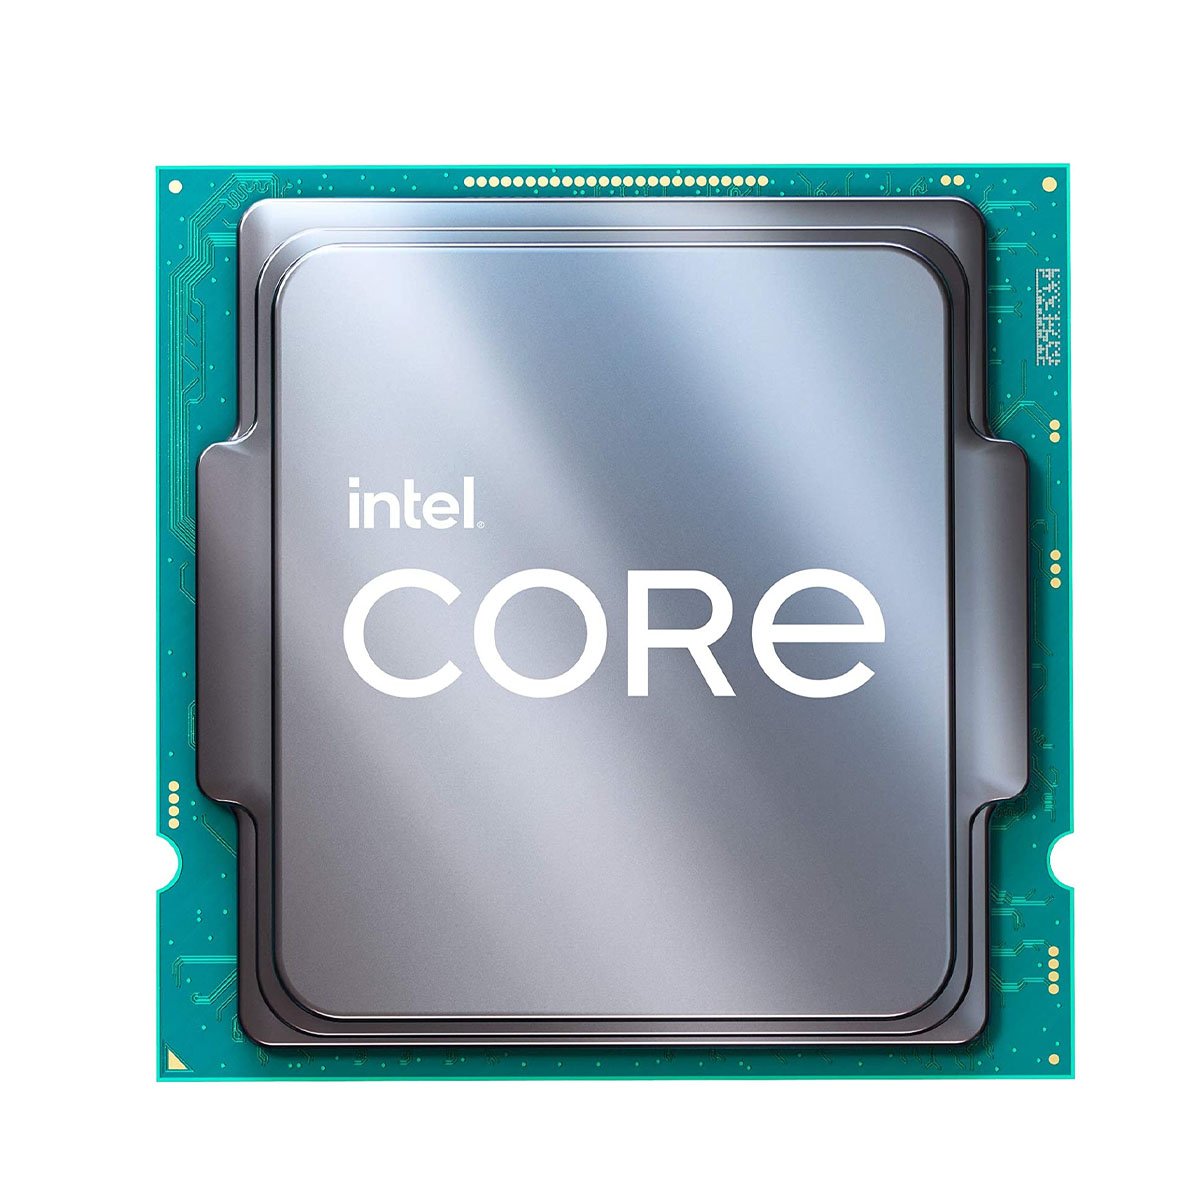 Intel Core 11th Gen i7-11700F LGA1200 Desktop Processor 8 Cores up to  4.9GHz 16MB Cache